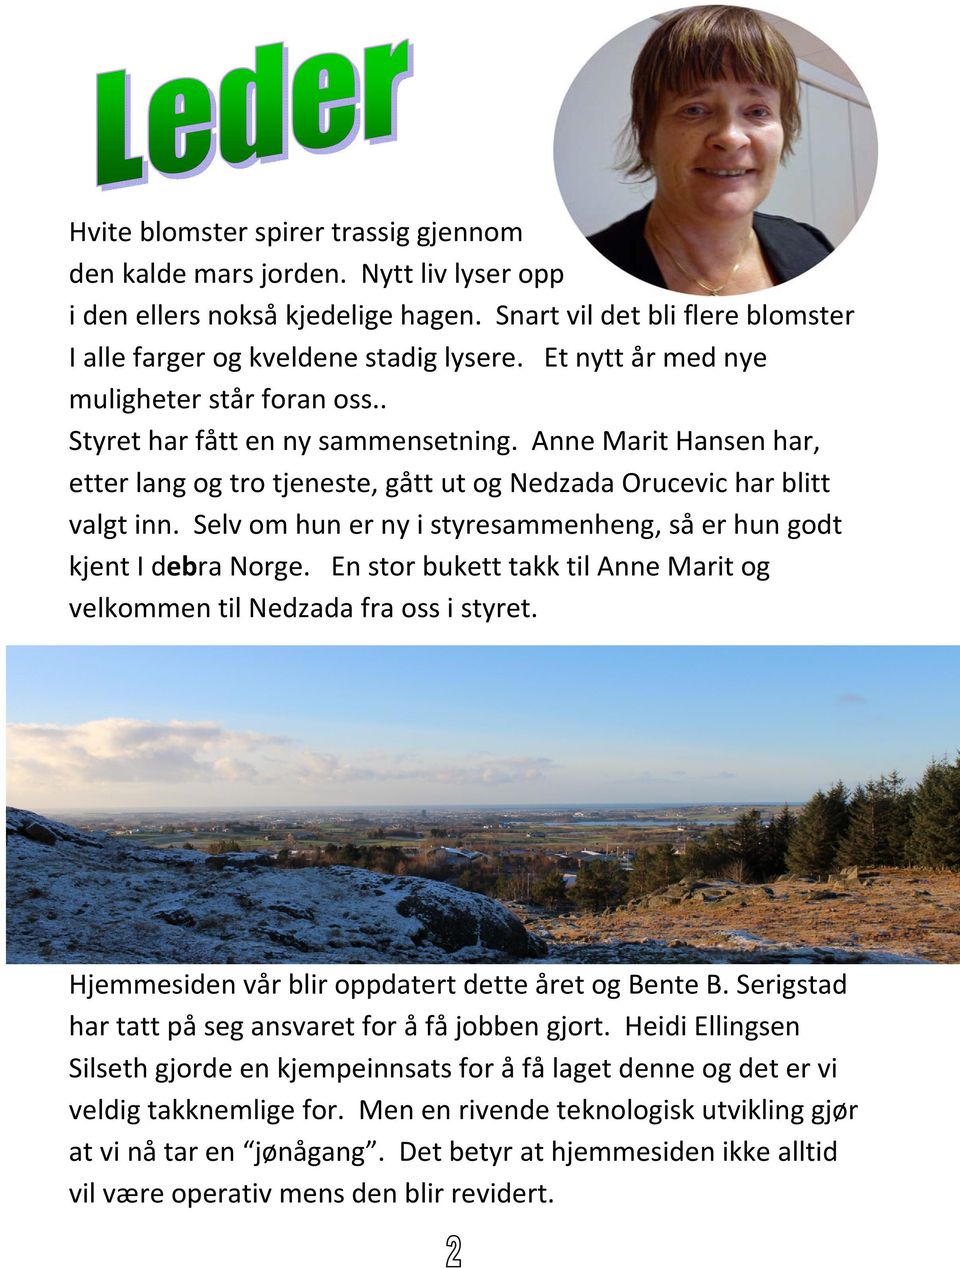 Selv om hun er ny i styresammenheng, så er hun godt kjent I debra Norge. En stor bukett takk til Anne Marit og velkommen til Nedzada fra oss i styret.